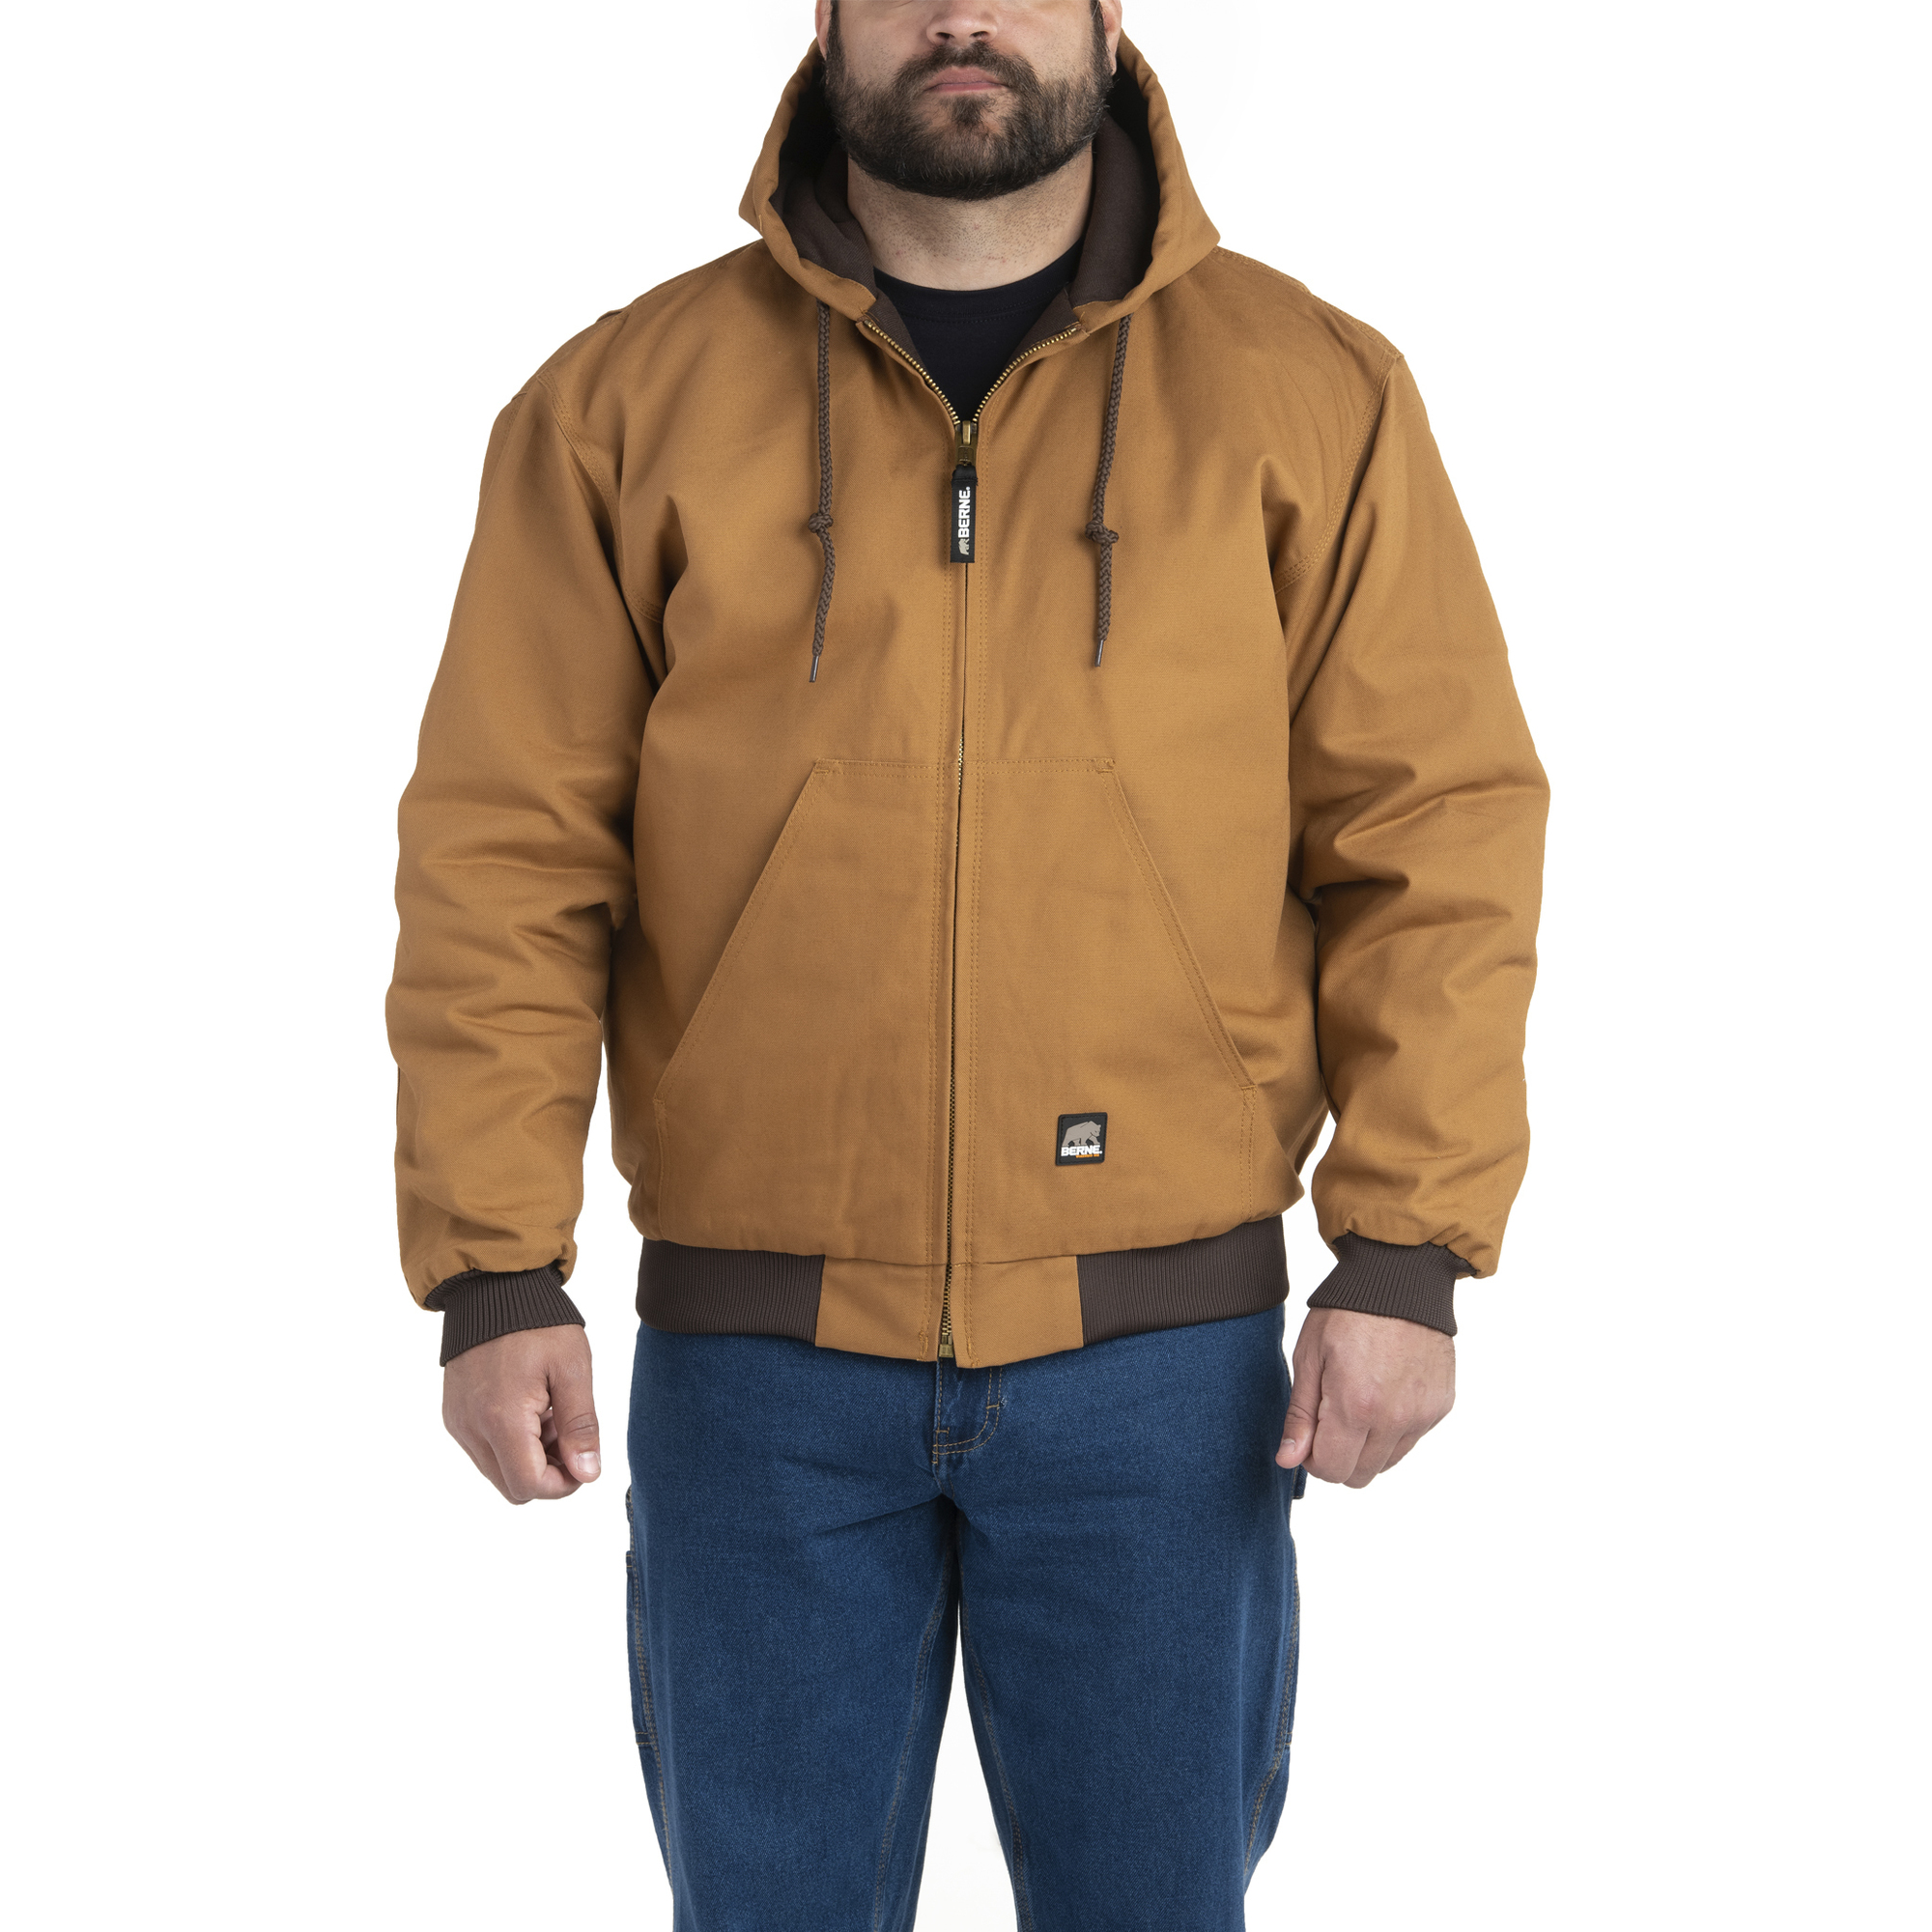 Berne Apparel, Heritage Hooded Jacket, Size XLT, Color Brown Duck, Model HJ51